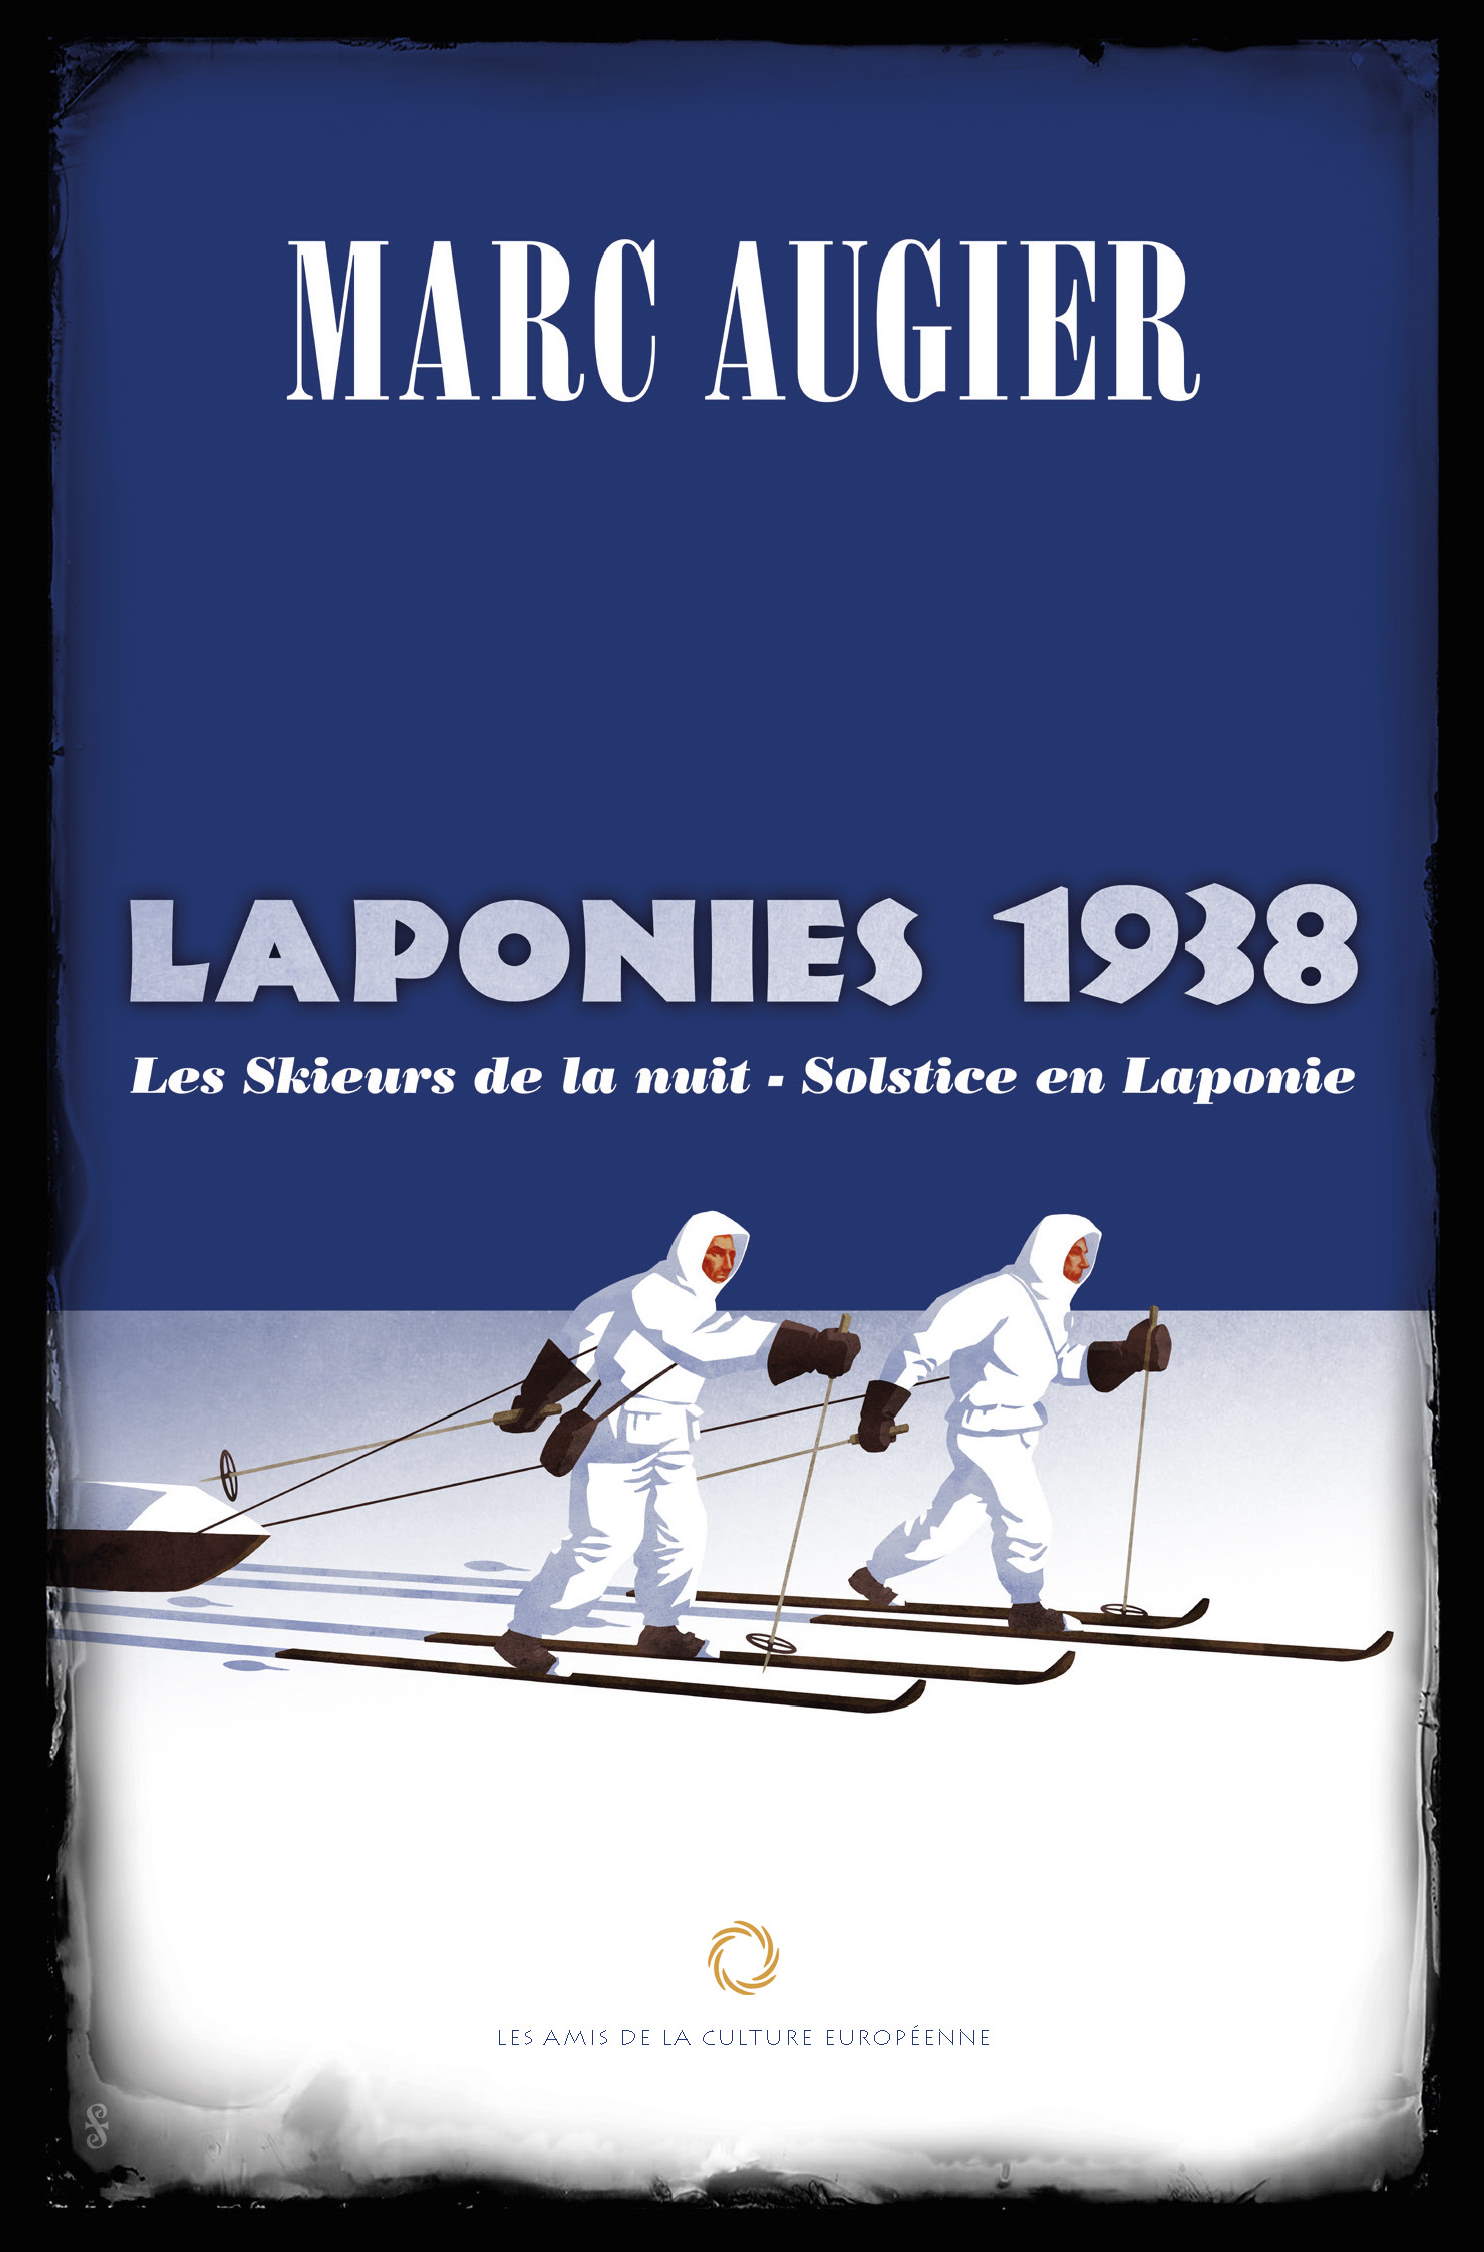 Marc Augier LAPONIES 1938 Solstice en Laponie Les skieurs de la nuit Couverture